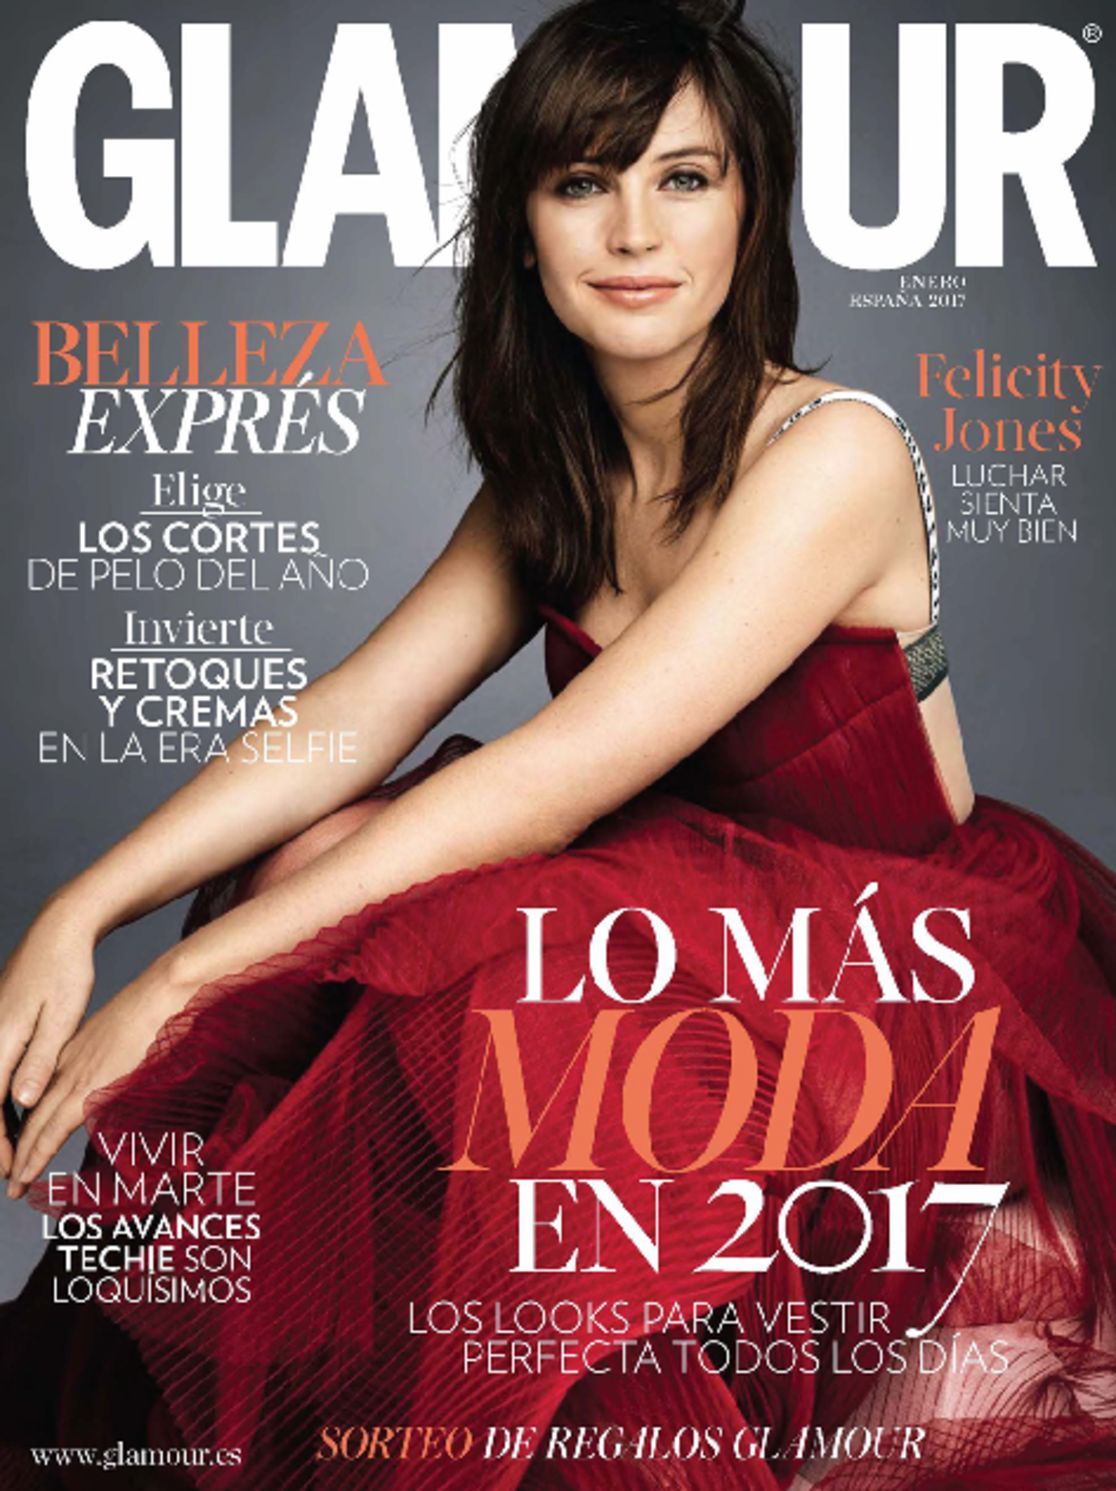 Glamour España (Digital) Magazine - DiscountMags.com